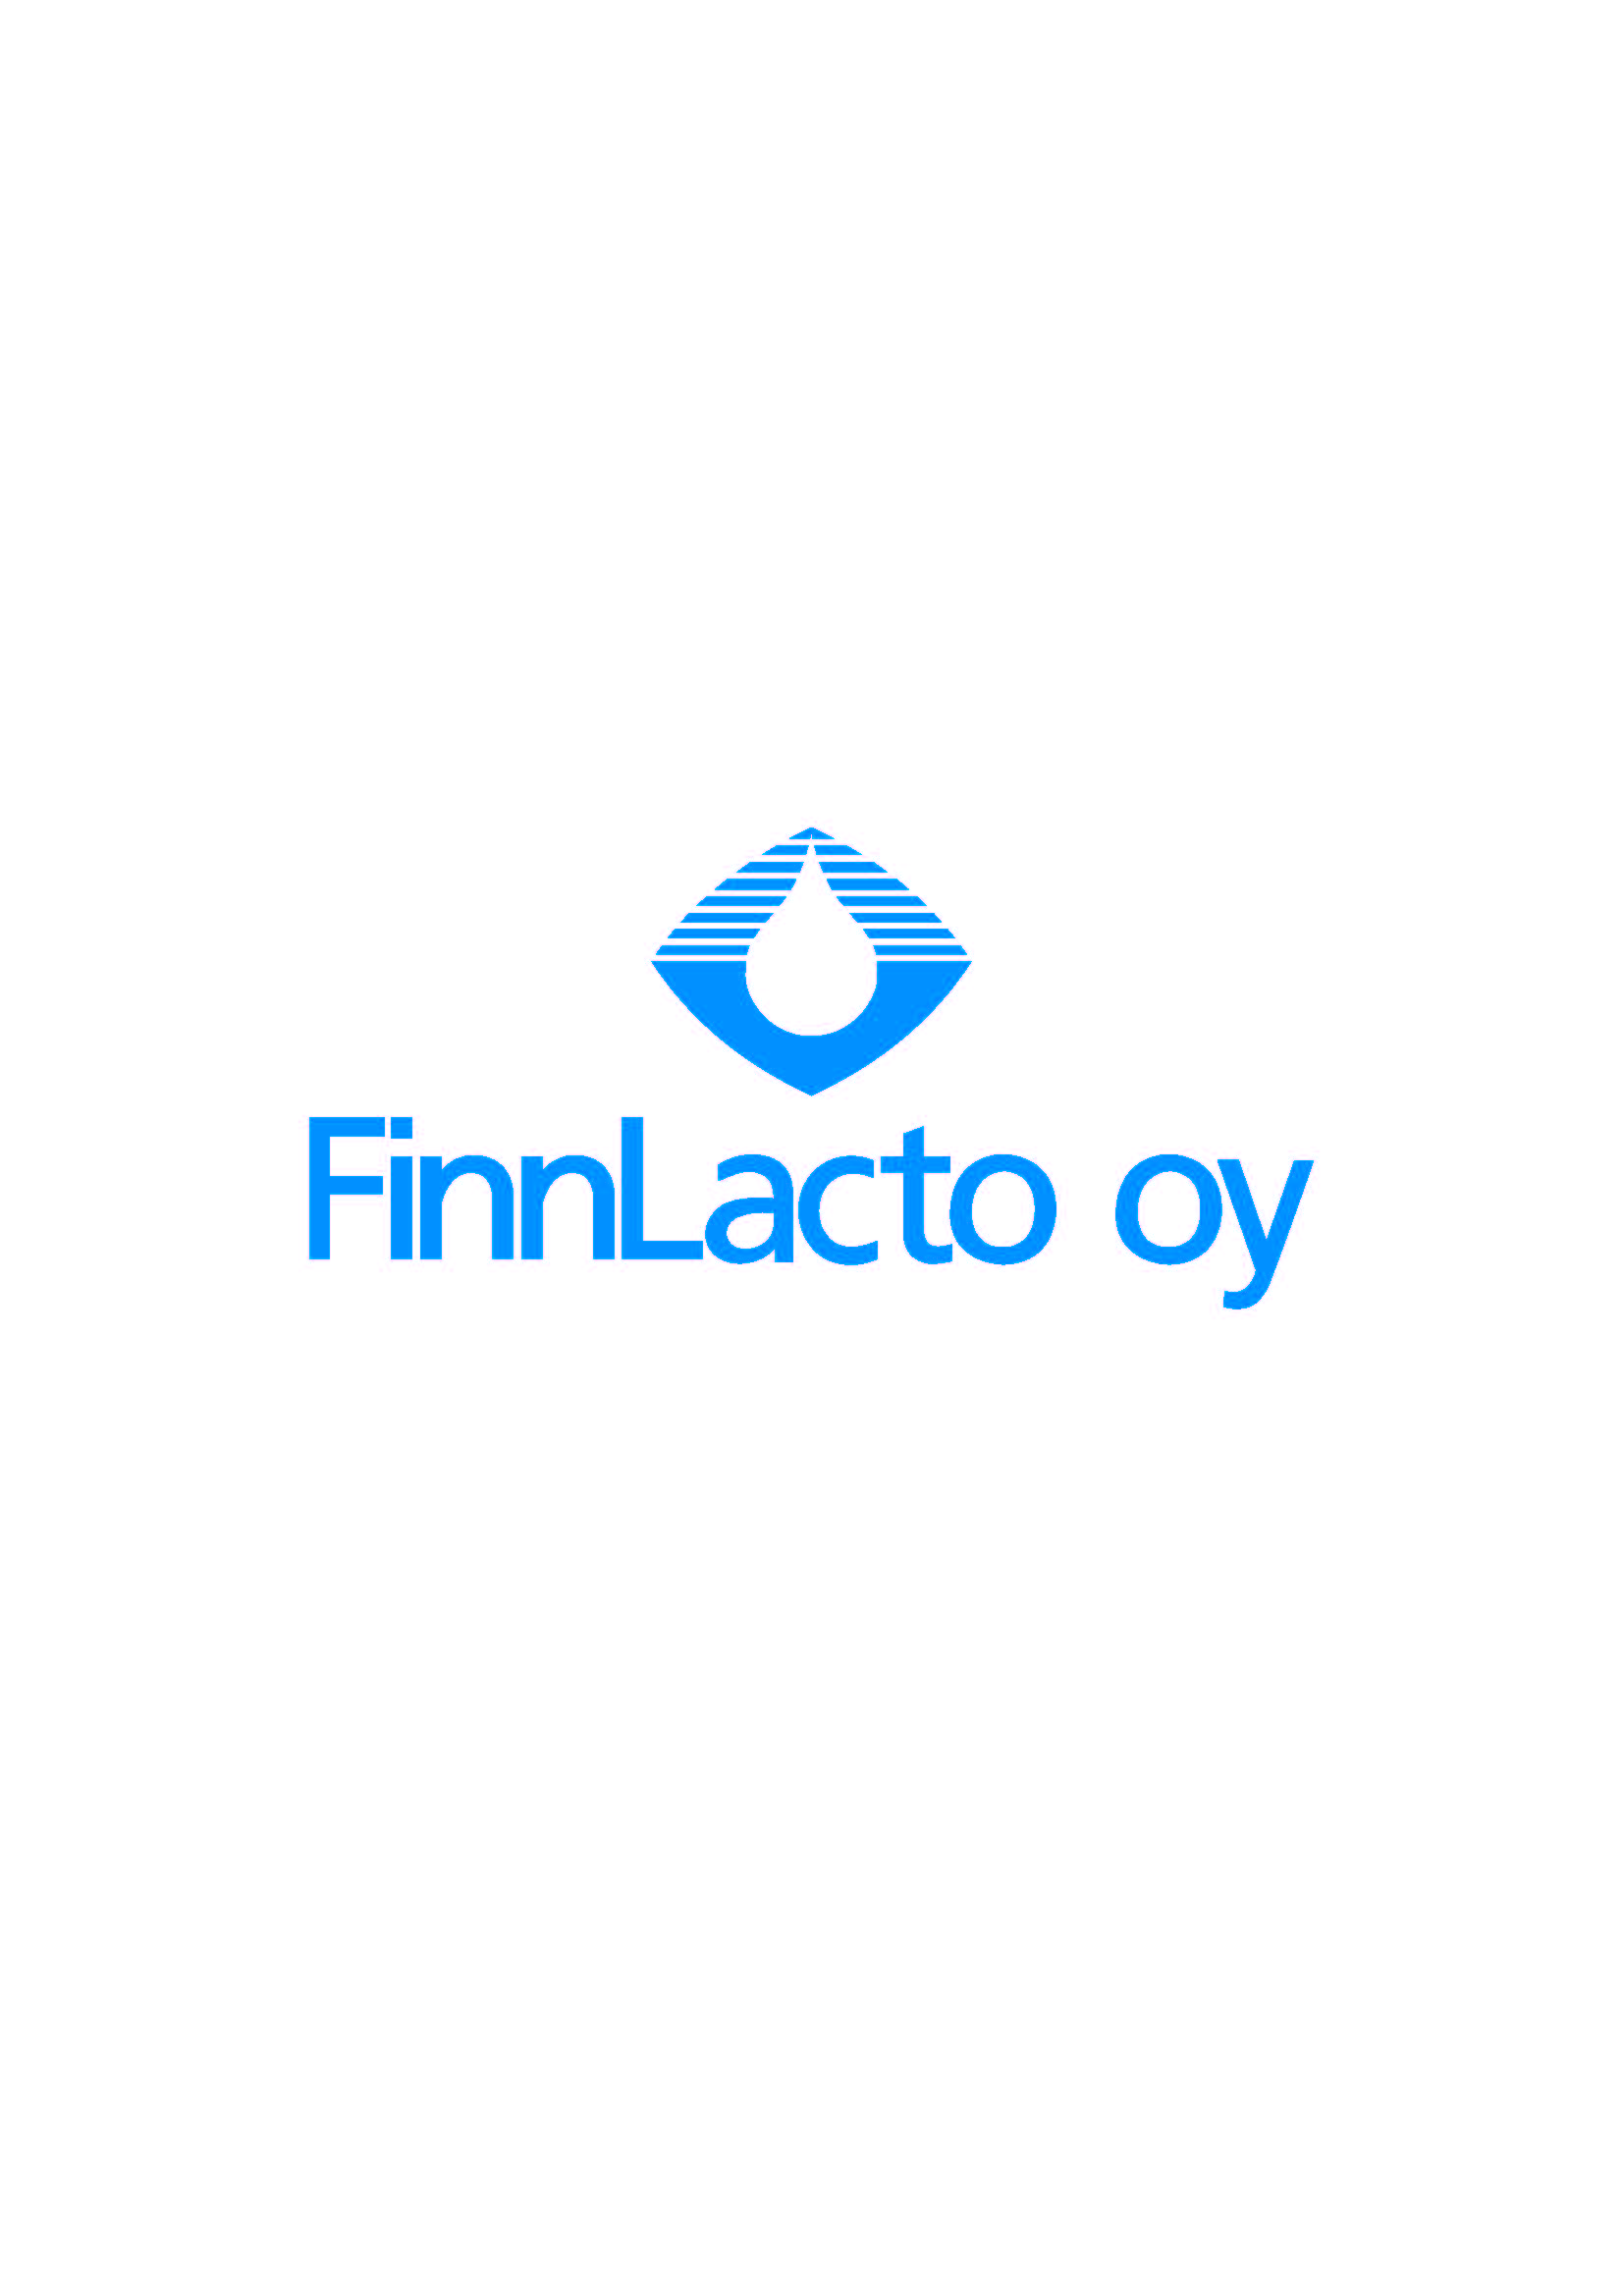 Faba osti FinnLacto Oy:n koko osakekannan ja liiketoiminnan